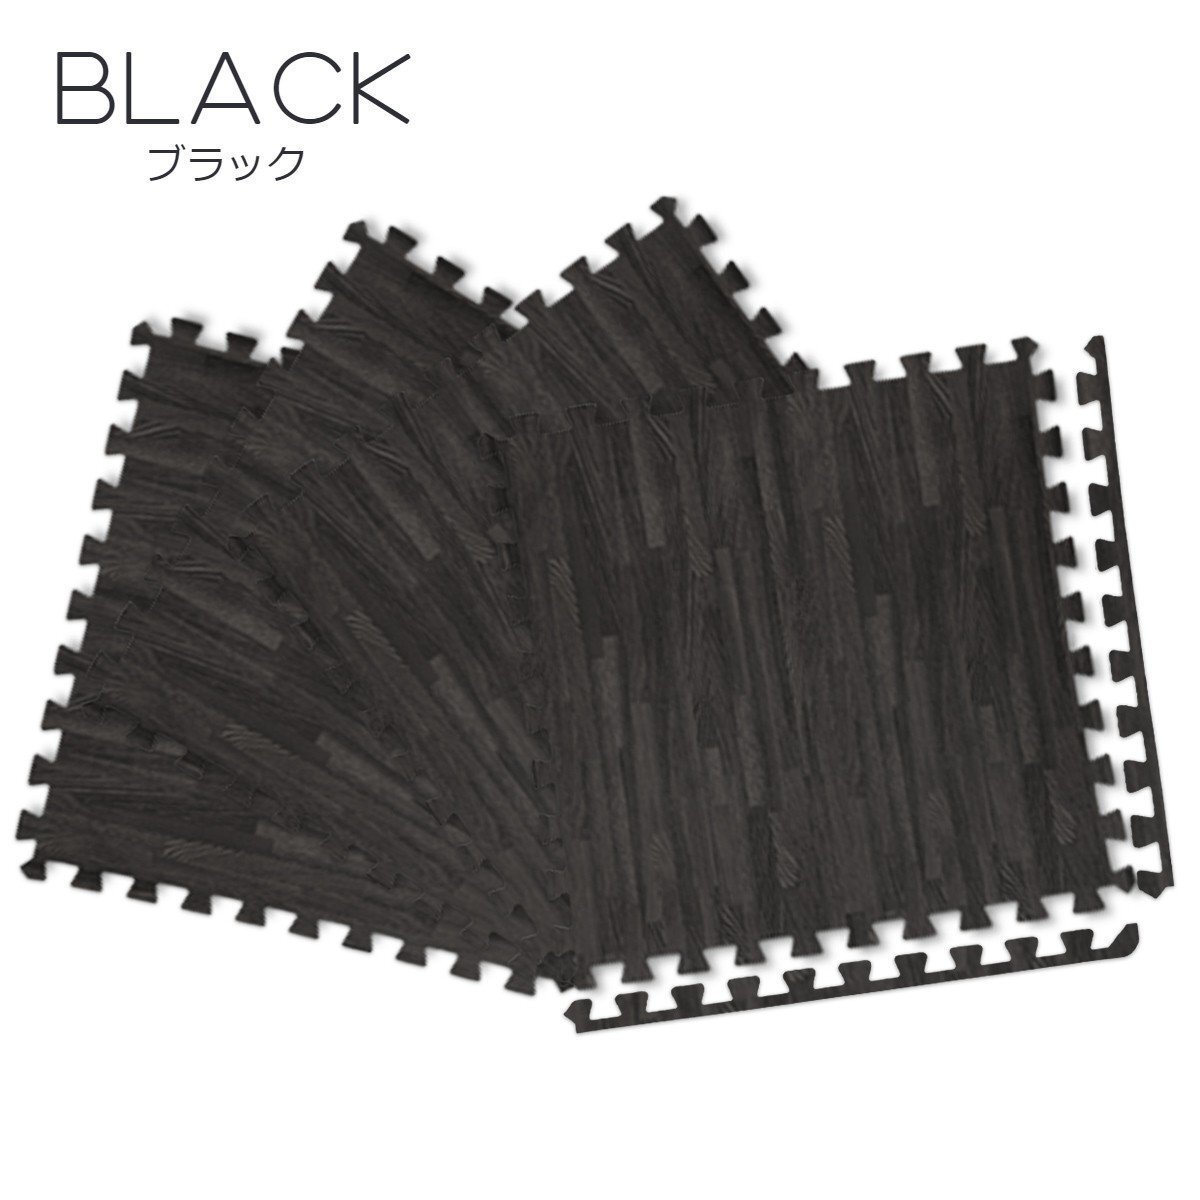 Коврик для коврика Black1 Black 16 сетов большого размера толщиной 60 см 1 см коврик для живой подушки